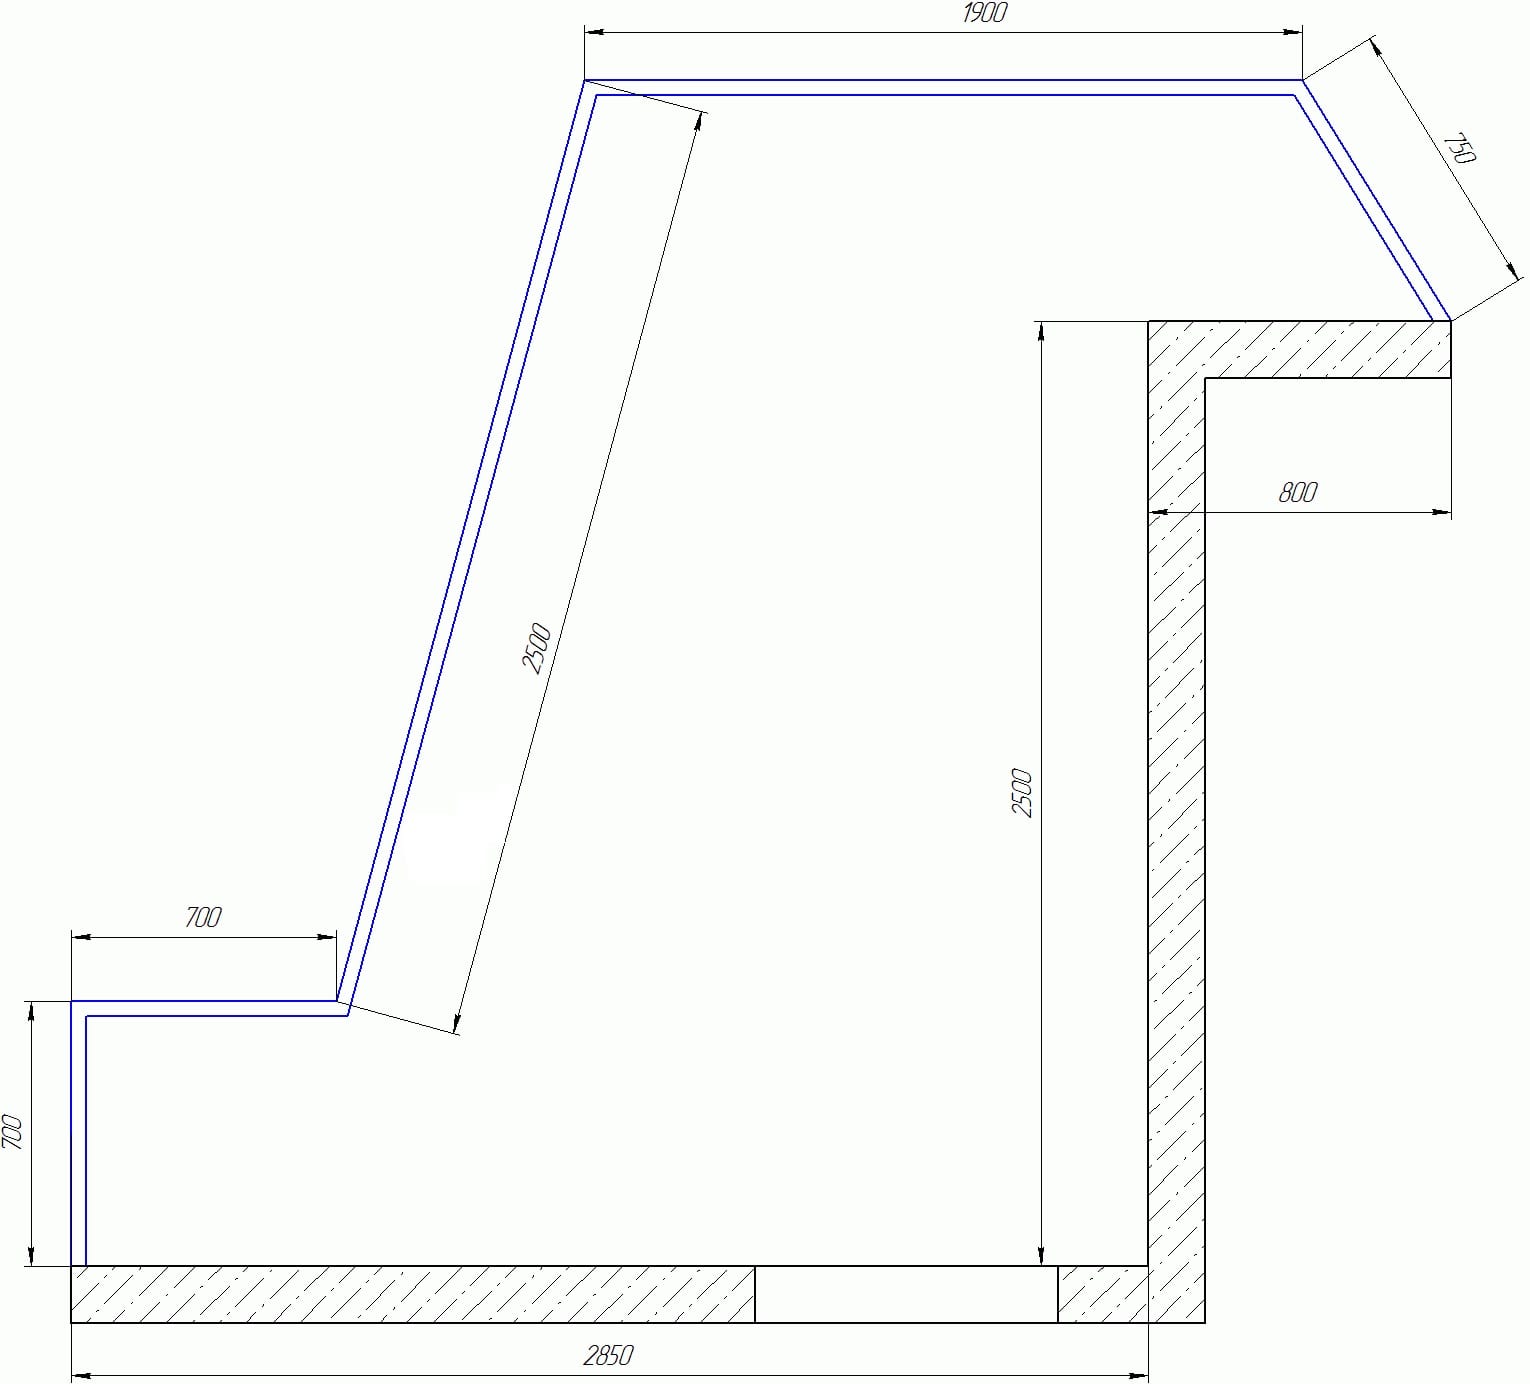 Остекление балконов и лоджий в многоэтажках серии ПД-4/4М